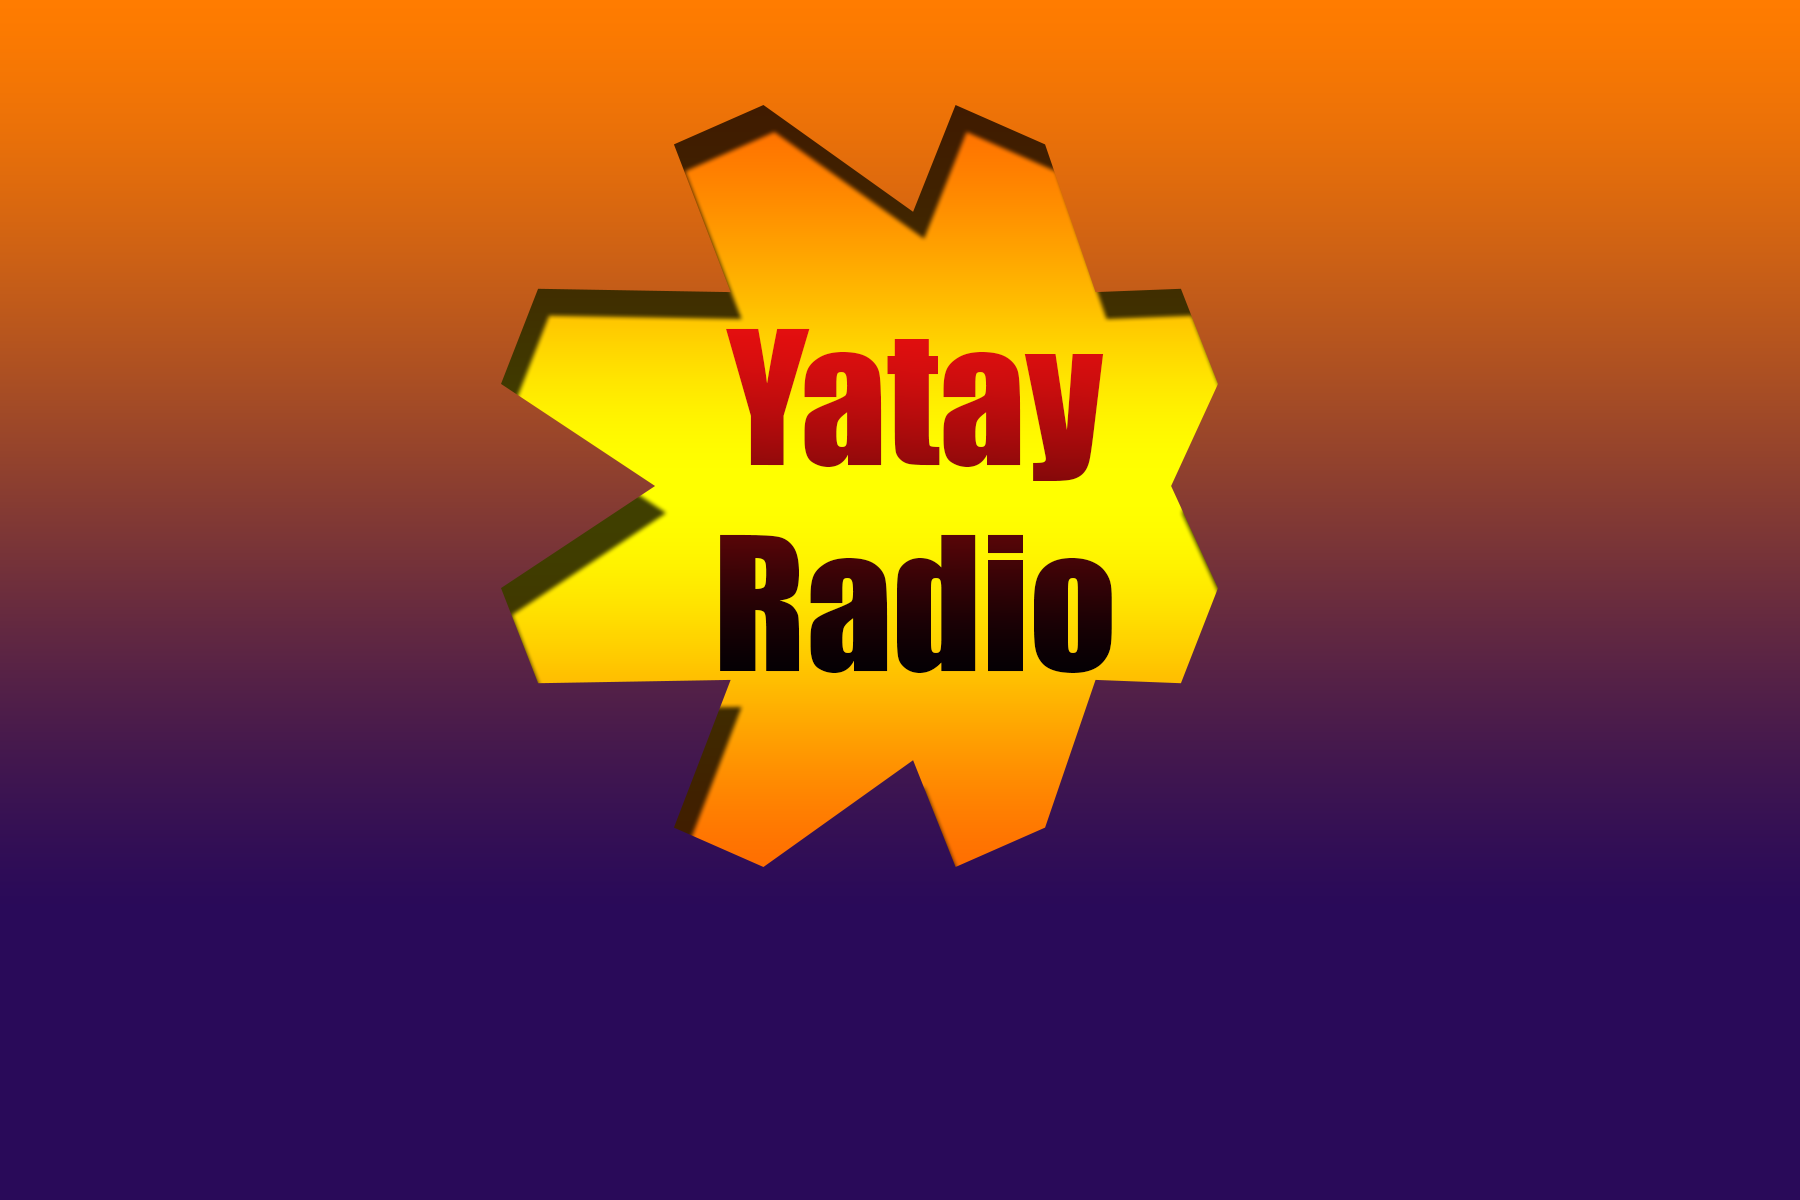 yatay radio